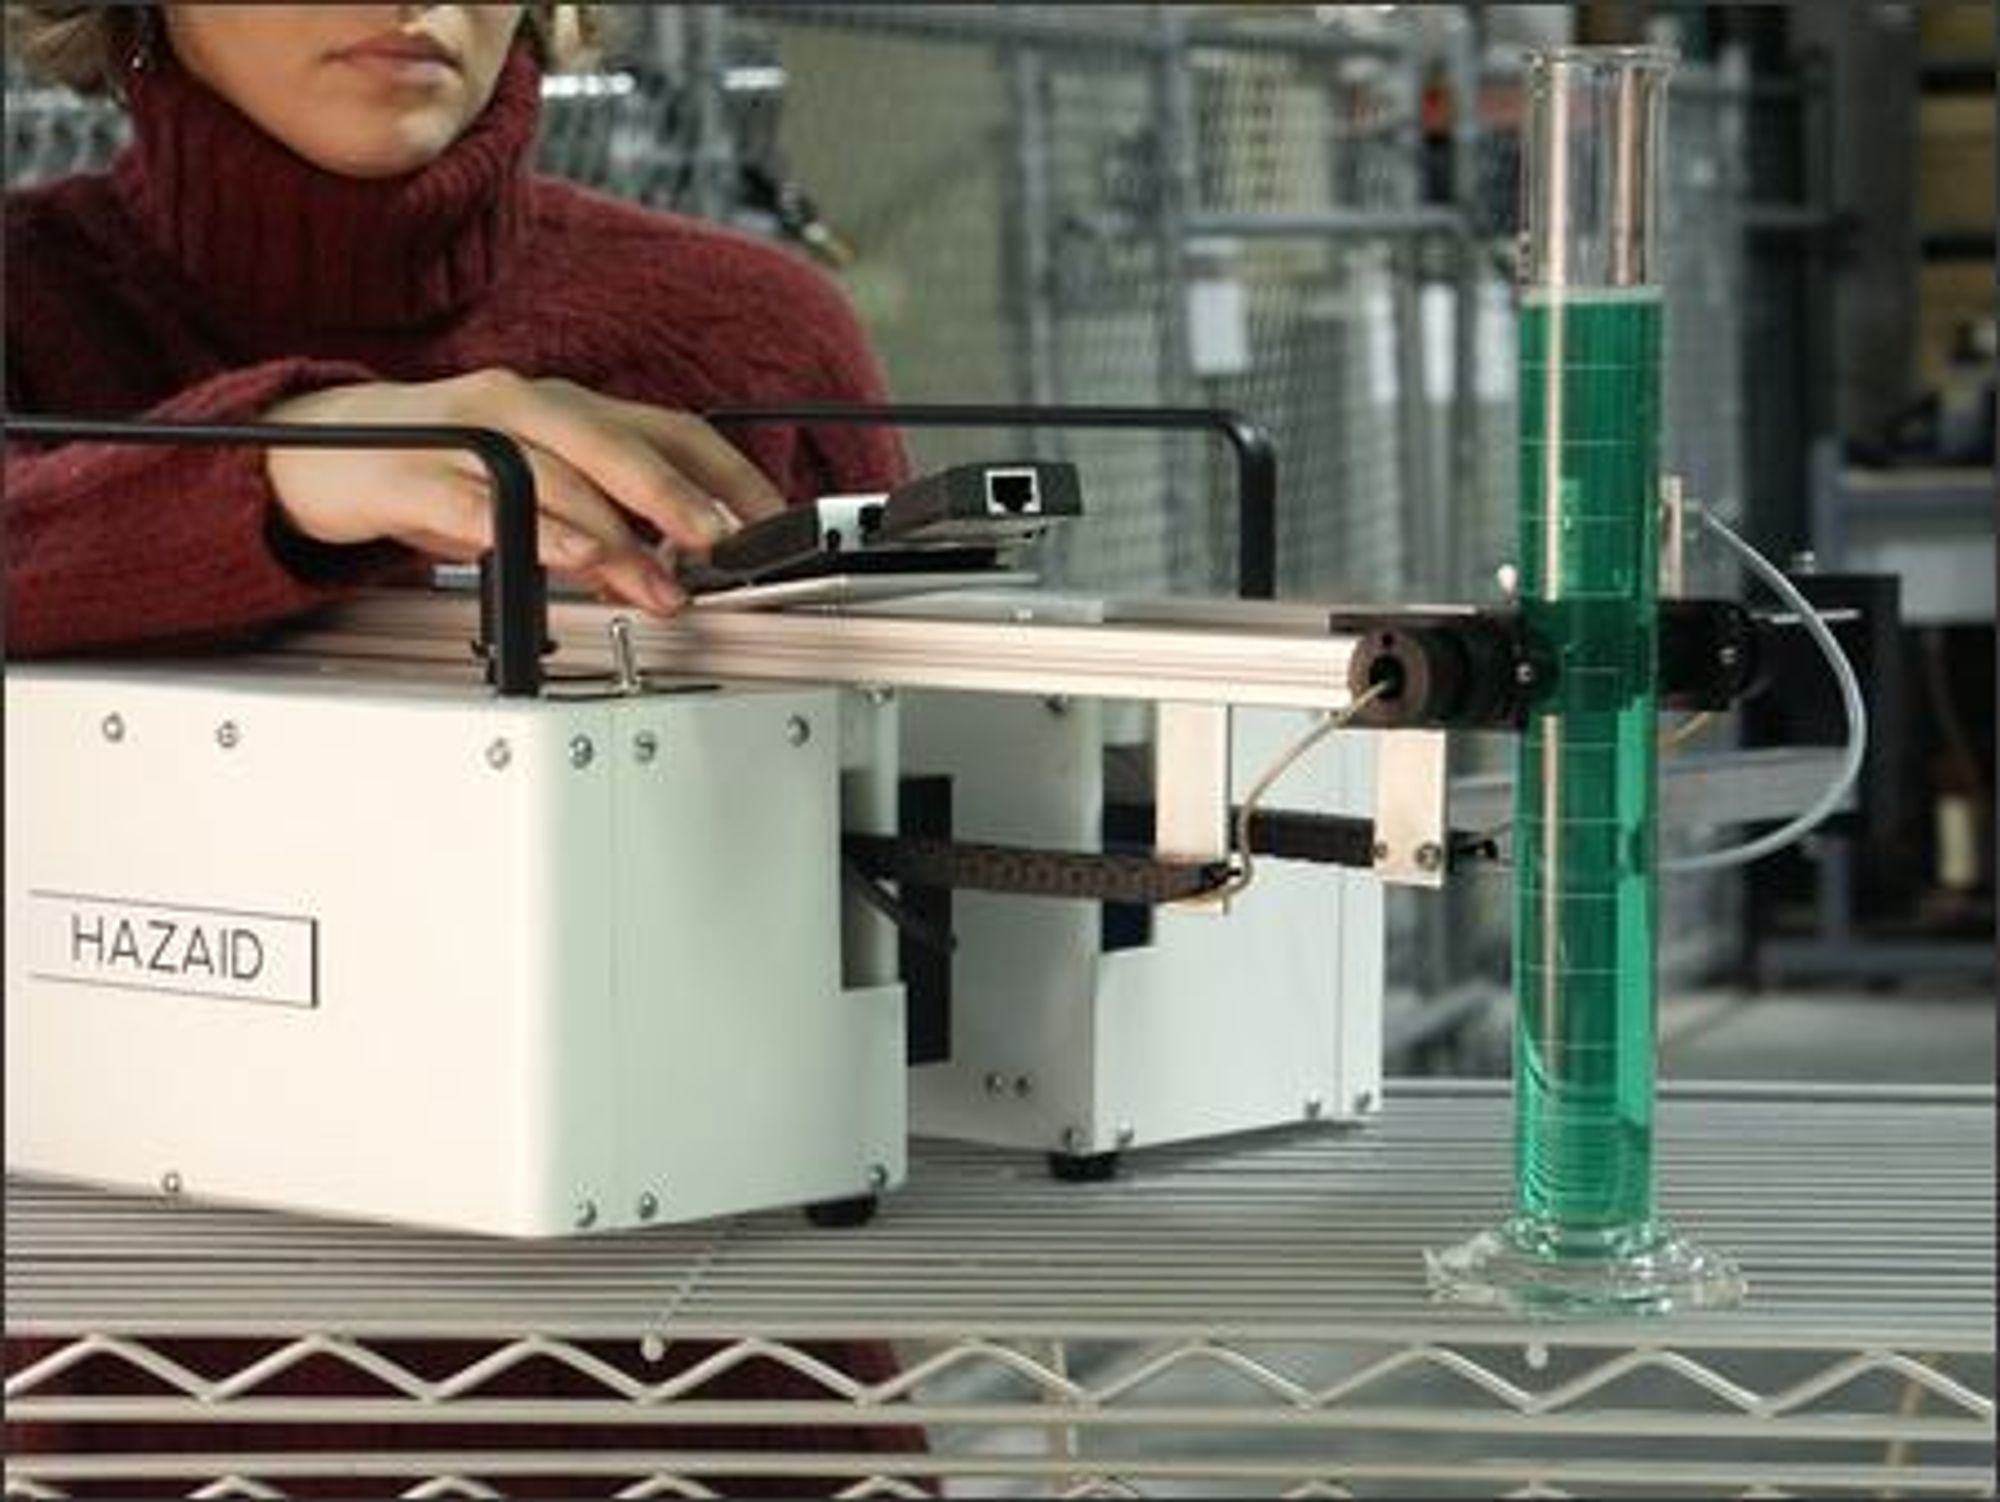 Forskere ved Pacific Northwest National Laboratory har utviklet apparatet Hazaid for amerikanske tollmyndigheter. Nå kan oppfinnelsen bli nyttig i jakten på bombematerialer. Ved hjelp av ultralyd og målinger av lydens hastighet gjennom væske, kan væskens oppbygging beskrives.